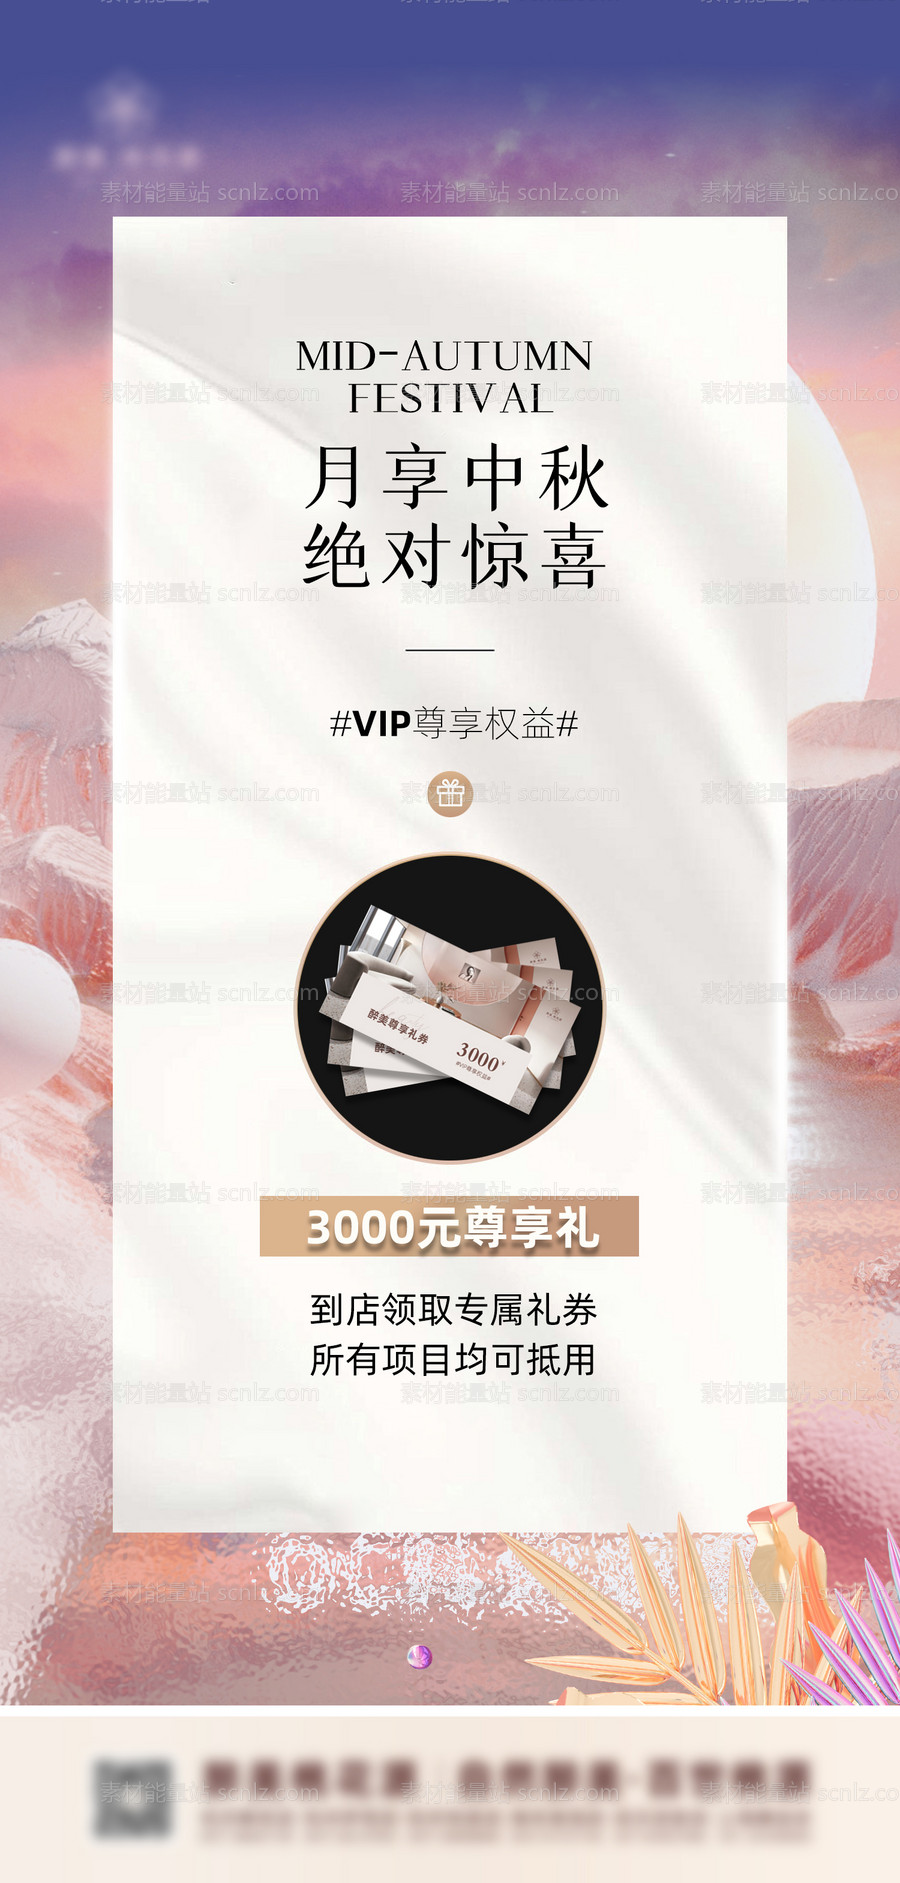 素材能量站-中秋节VIP尊享权益活动海报